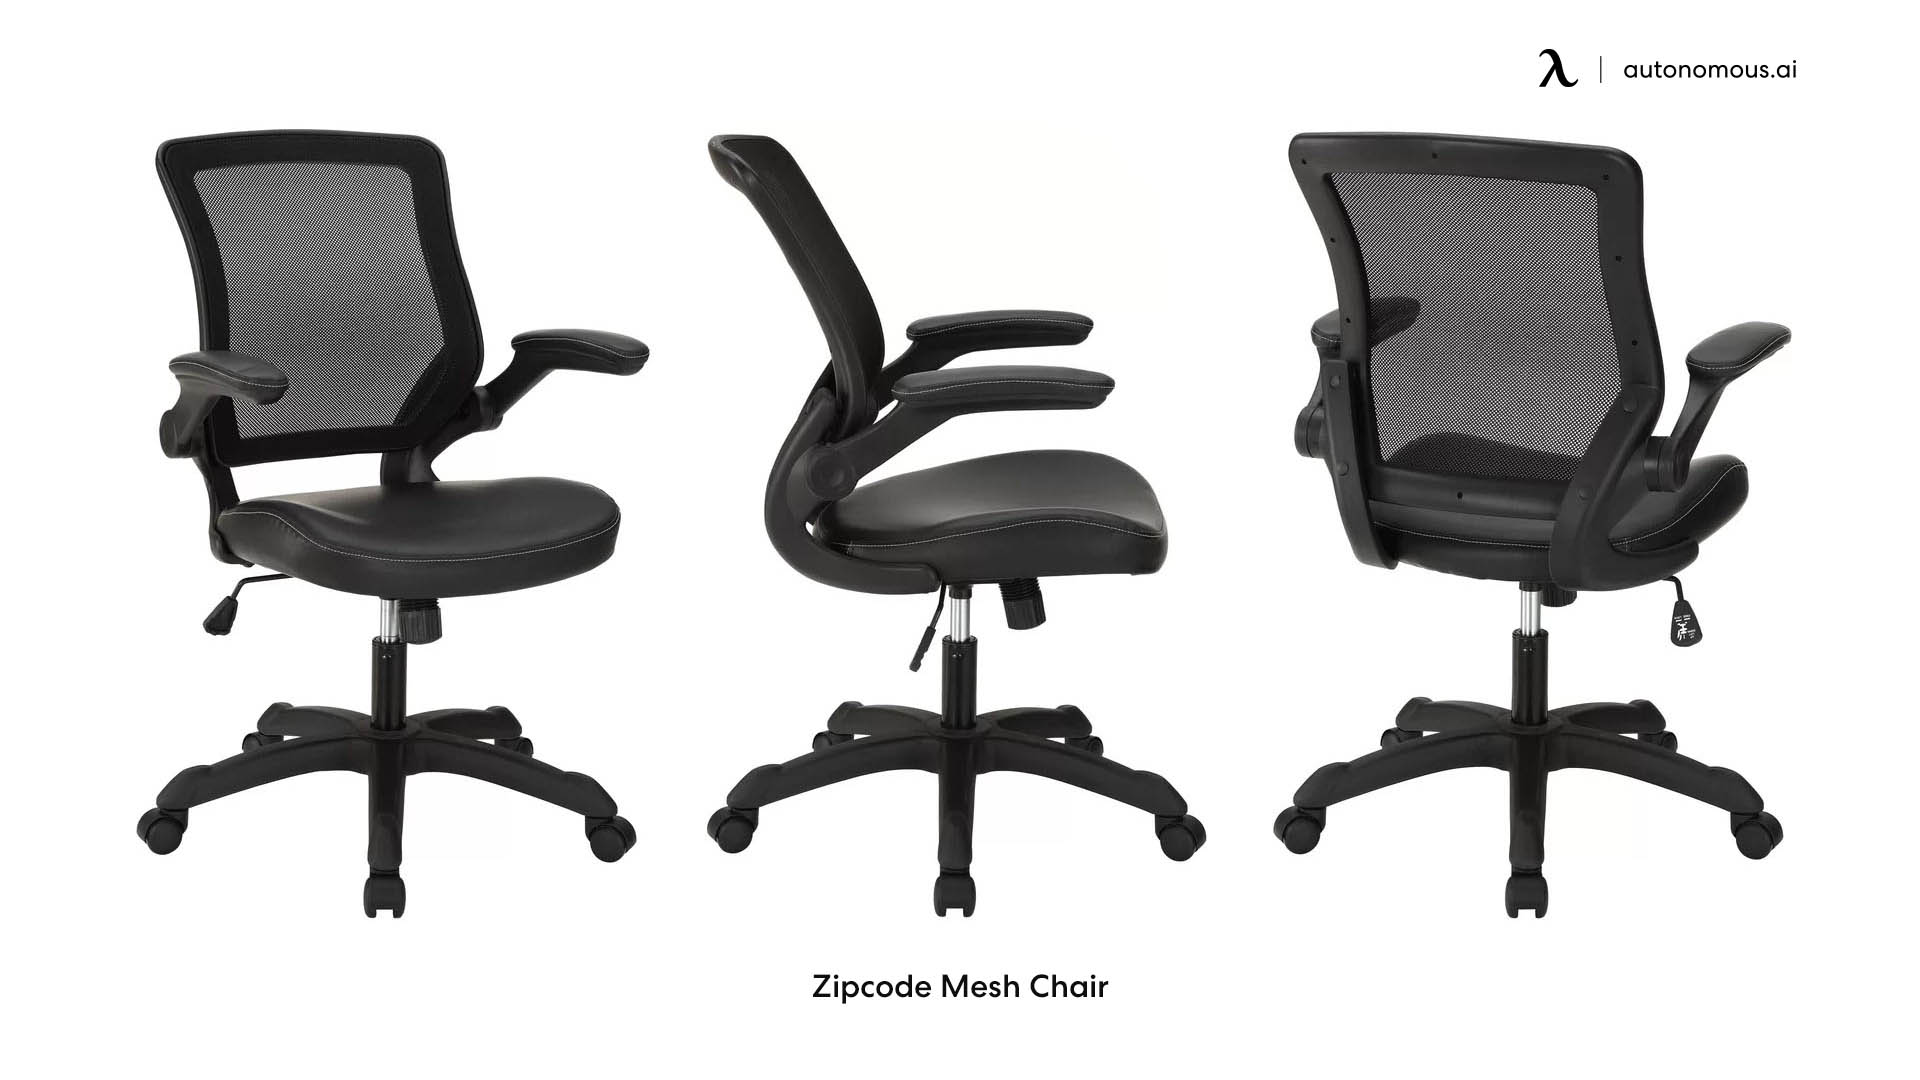 Zipcode Mesh Chair